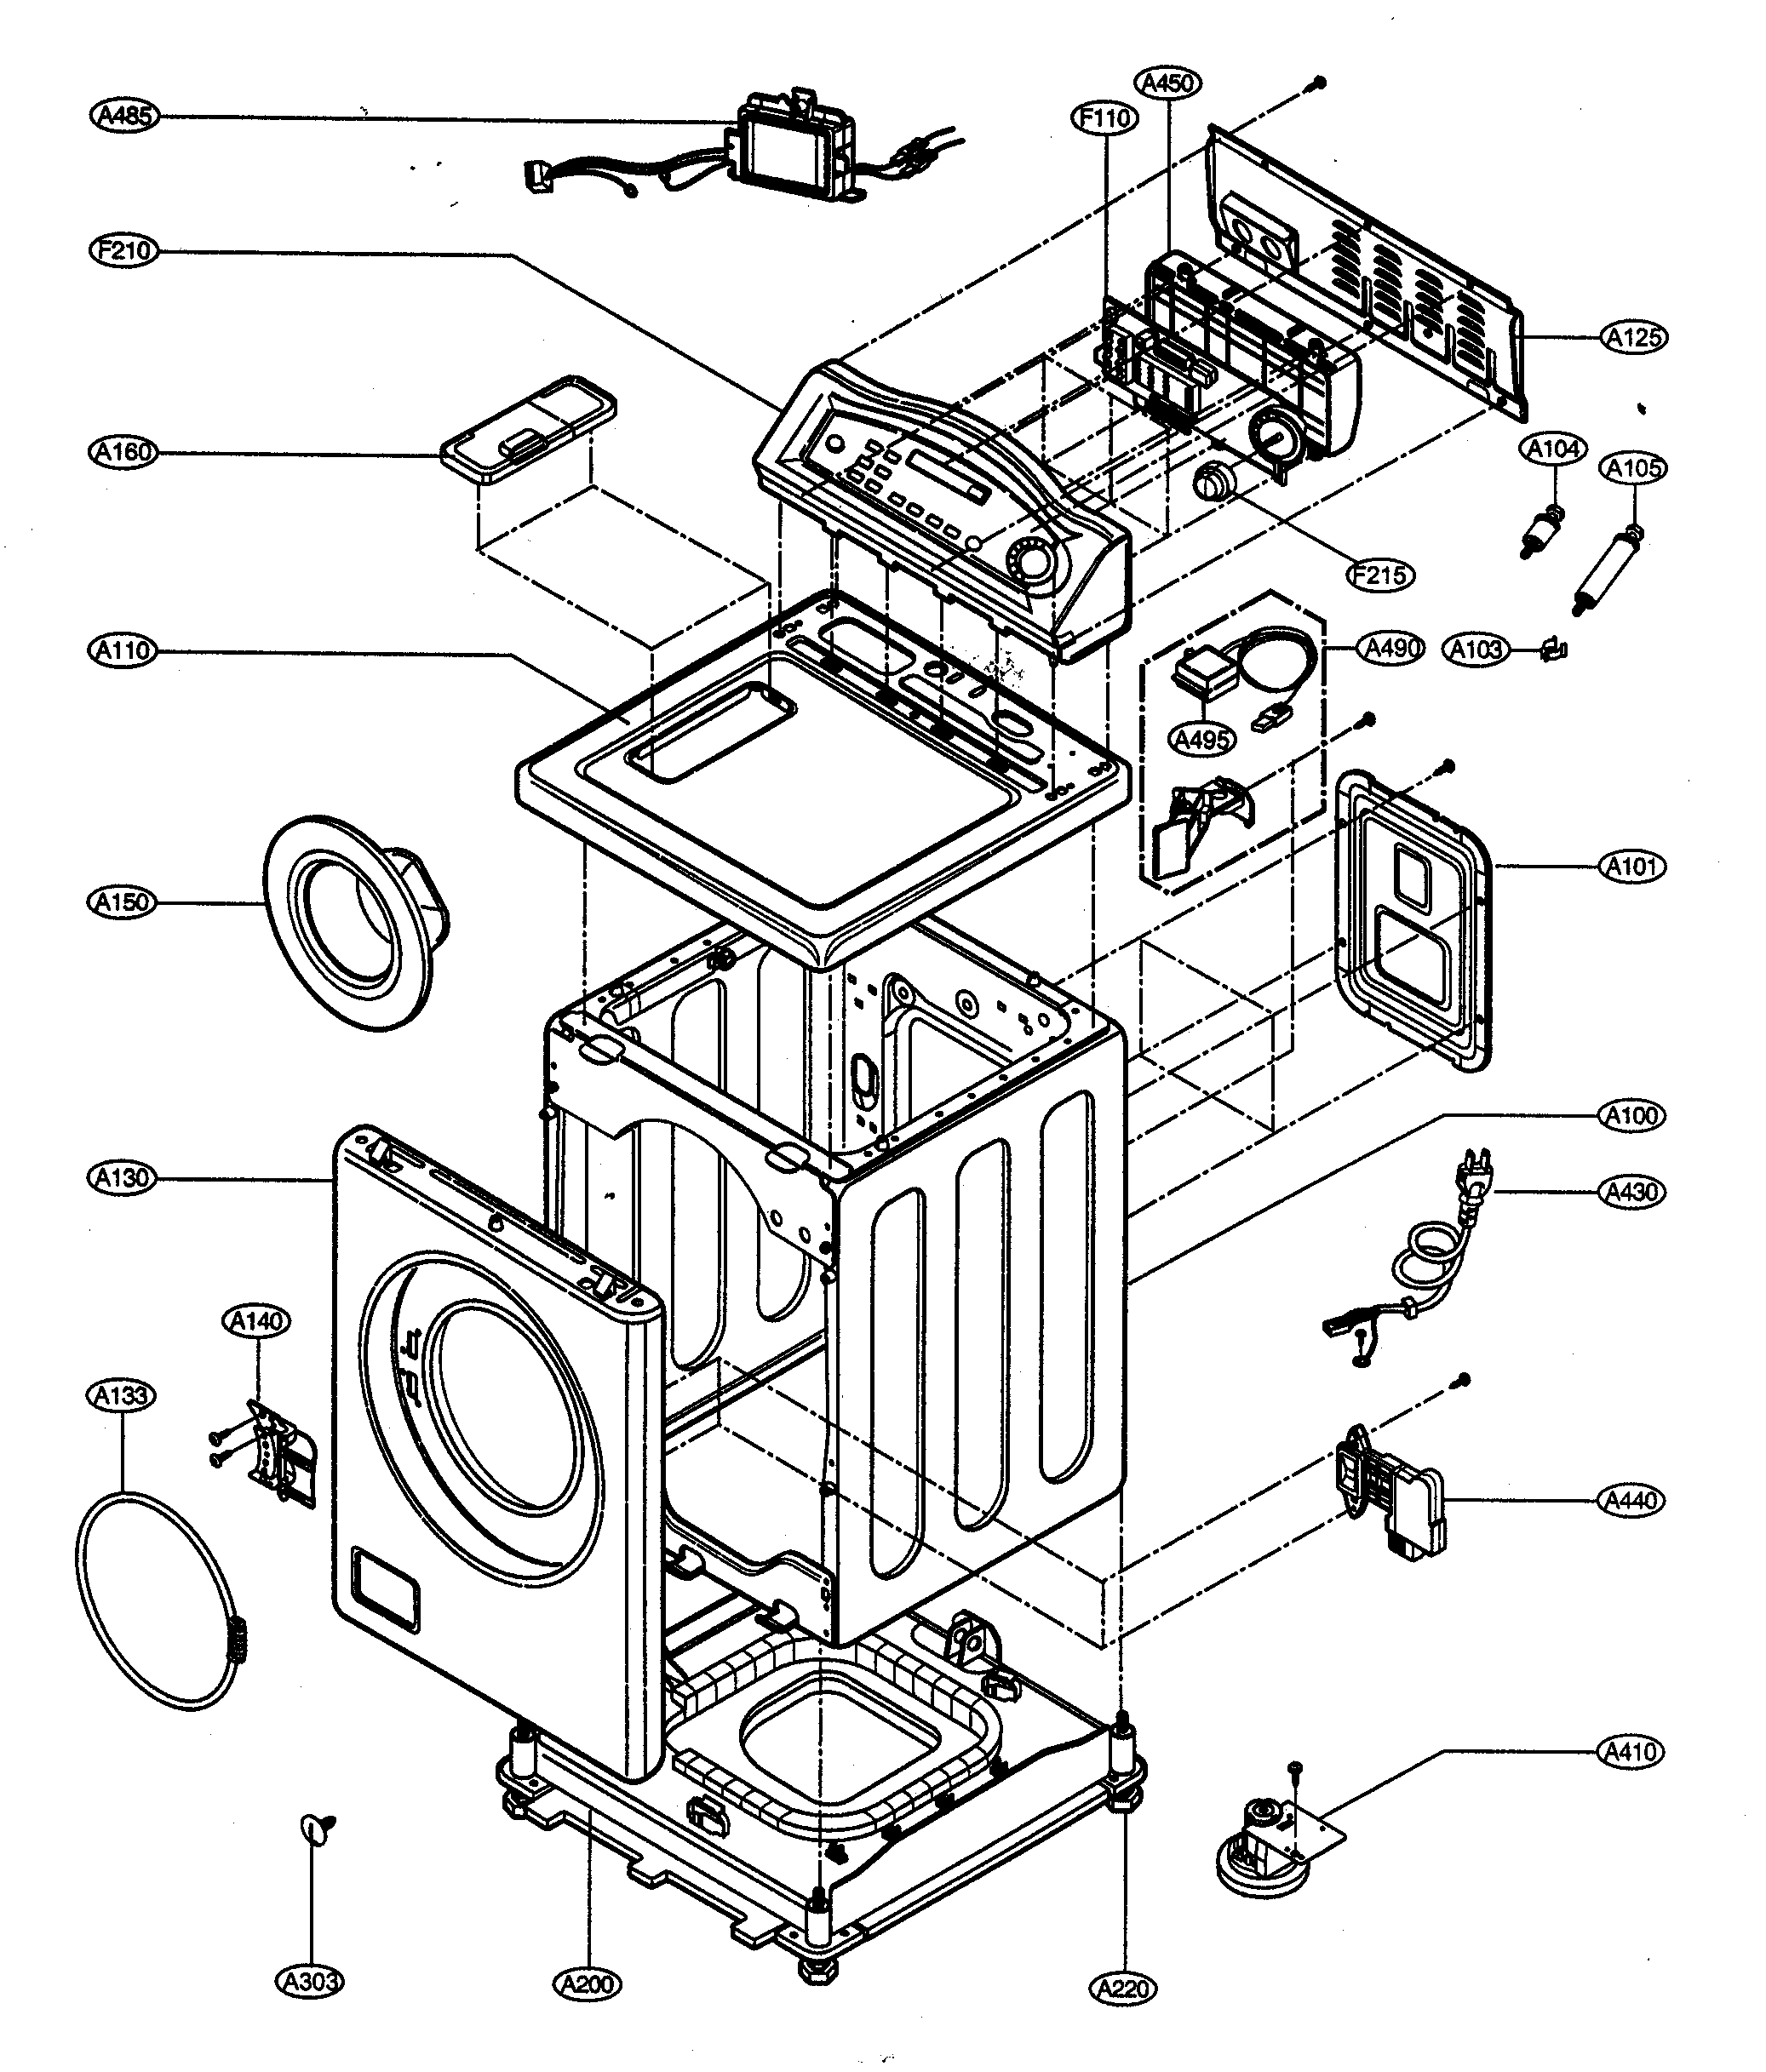 Ge Washing Machine Circuit Diagram